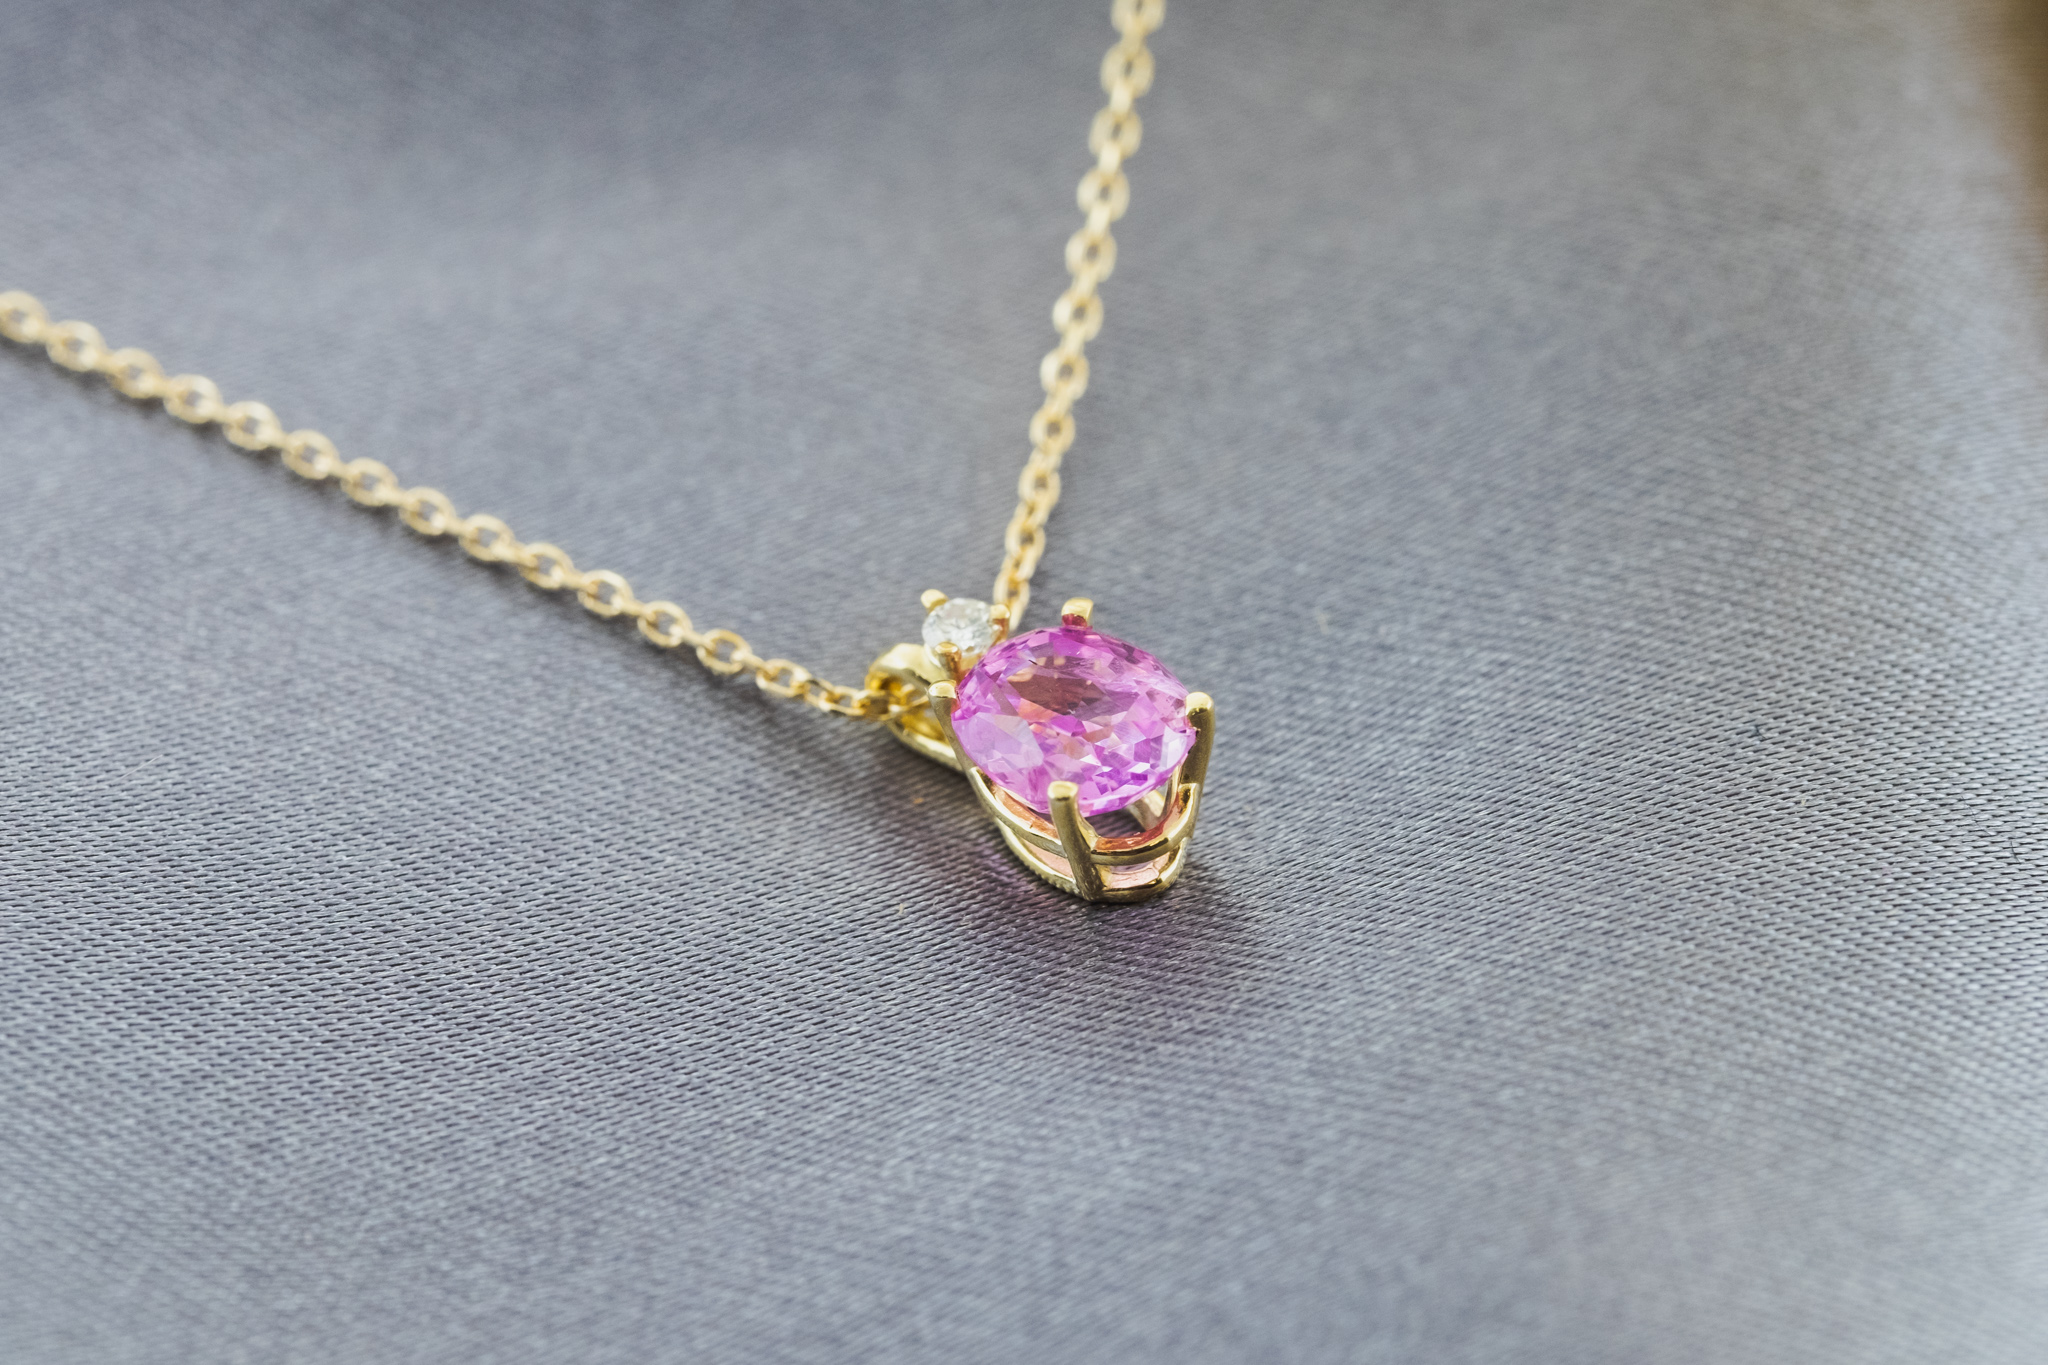 Sapphire Necklace – Yankee Goldsmiths